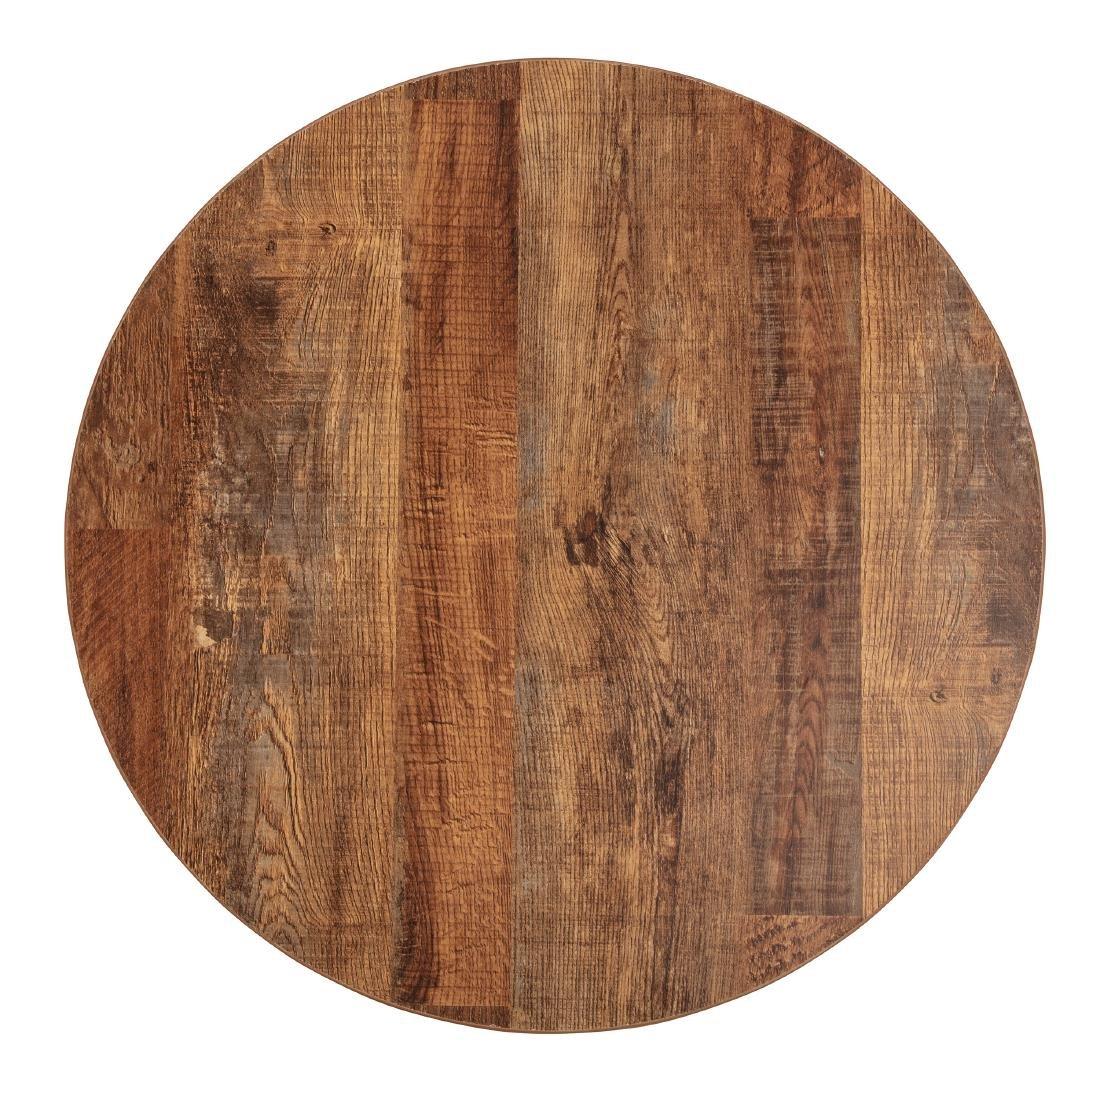 Tablero redondo de madera sobre la mesa